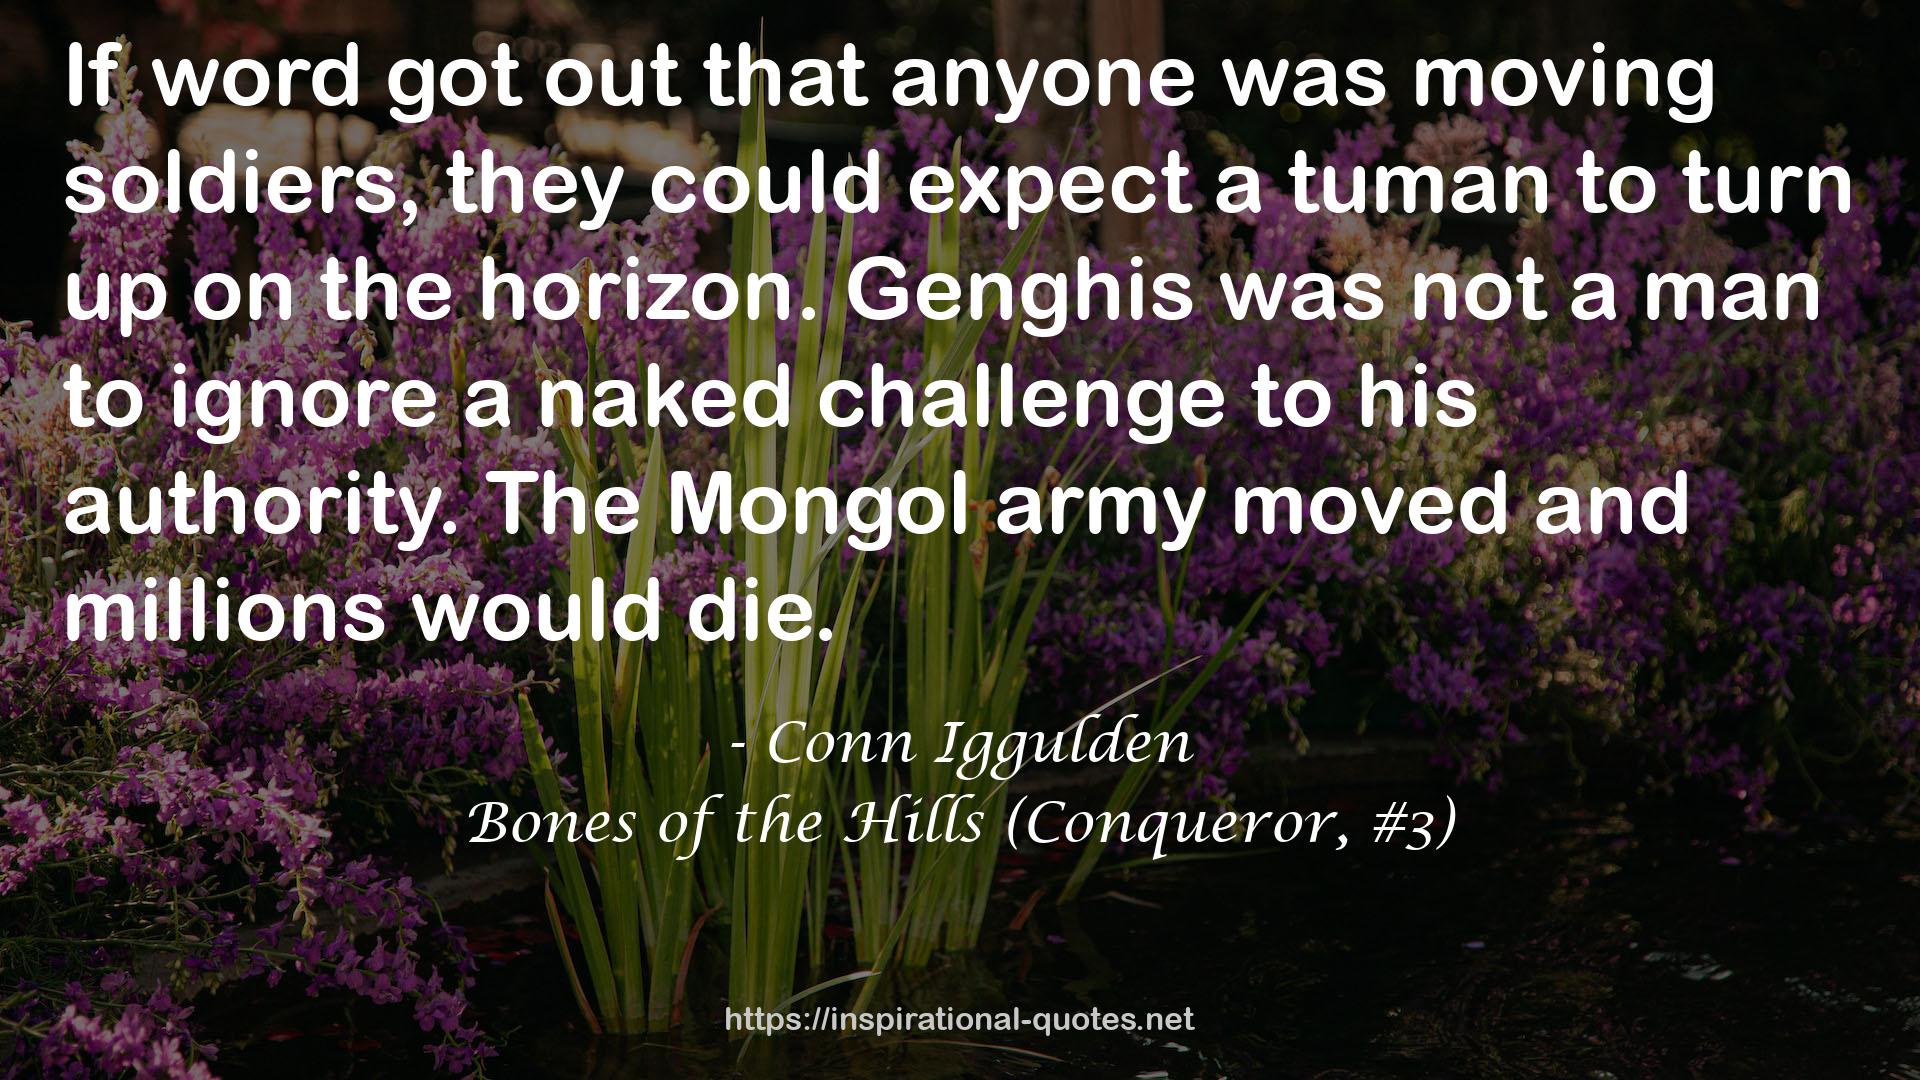 Bones of the Hills (Conqueror, #3) QUOTES